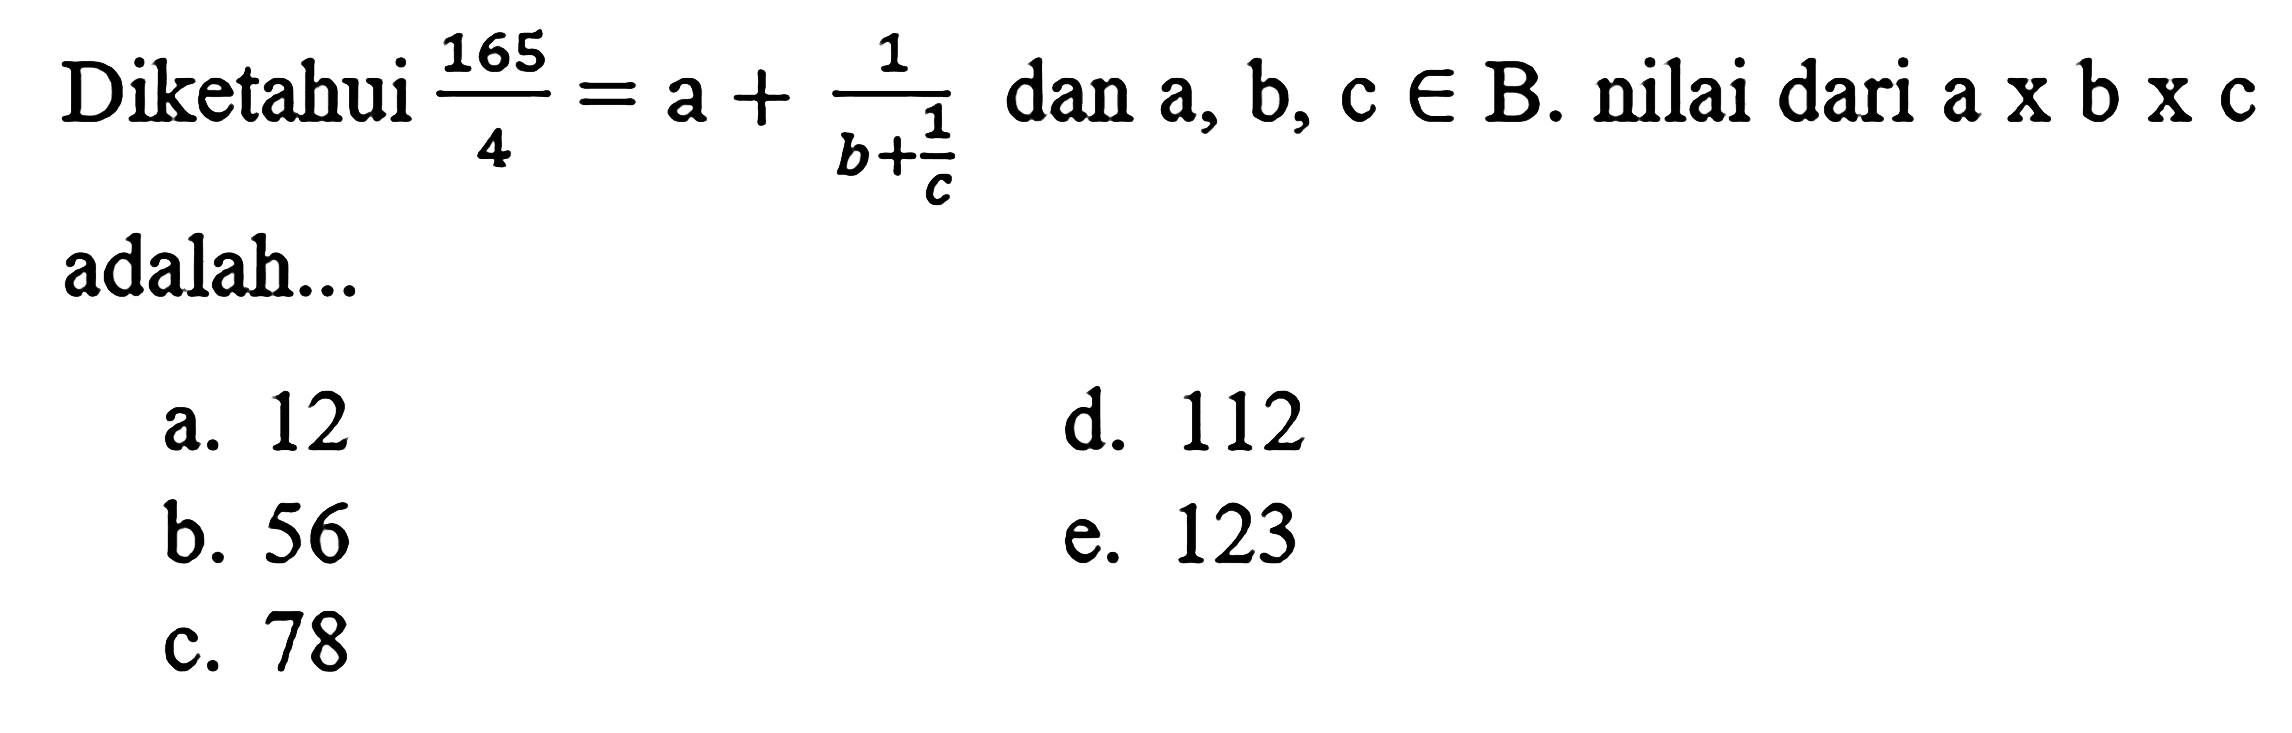 Diketahui  (165)/(4)=a+(1)/(b+(1)/(c))  dan  a, b, c in  B. nilai dari a  x b x c  adalah...
a. 12
d. 112
b. 56
e. 123
c. 78